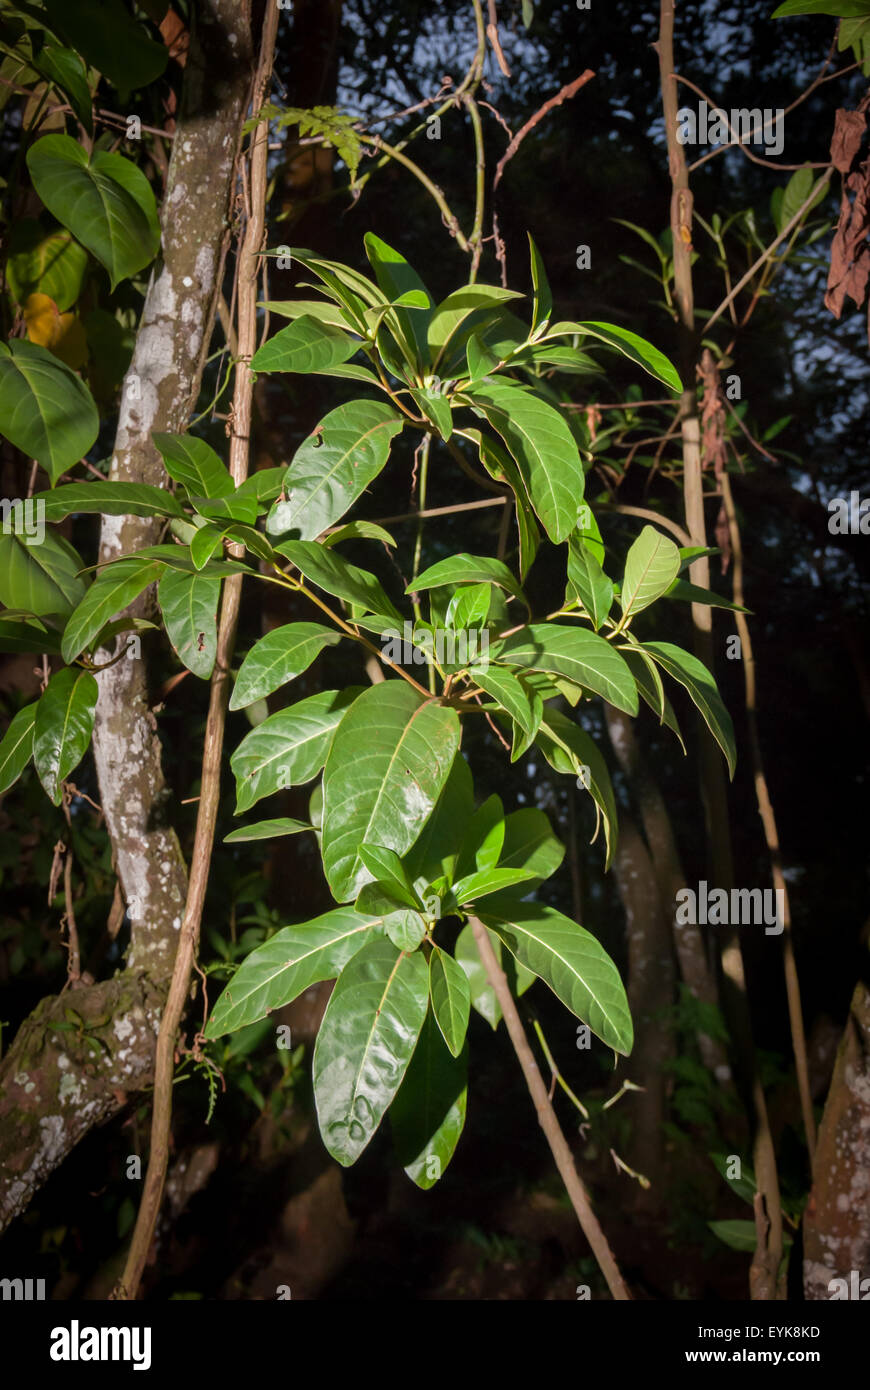 Feuilles d'une espèce non identifiée de quinine (Cinchona) à Lembang, West Bandung, West Java, Indonésie. La quinine est couramment utilisée pour le traitement du paludisme. Banque D'Images